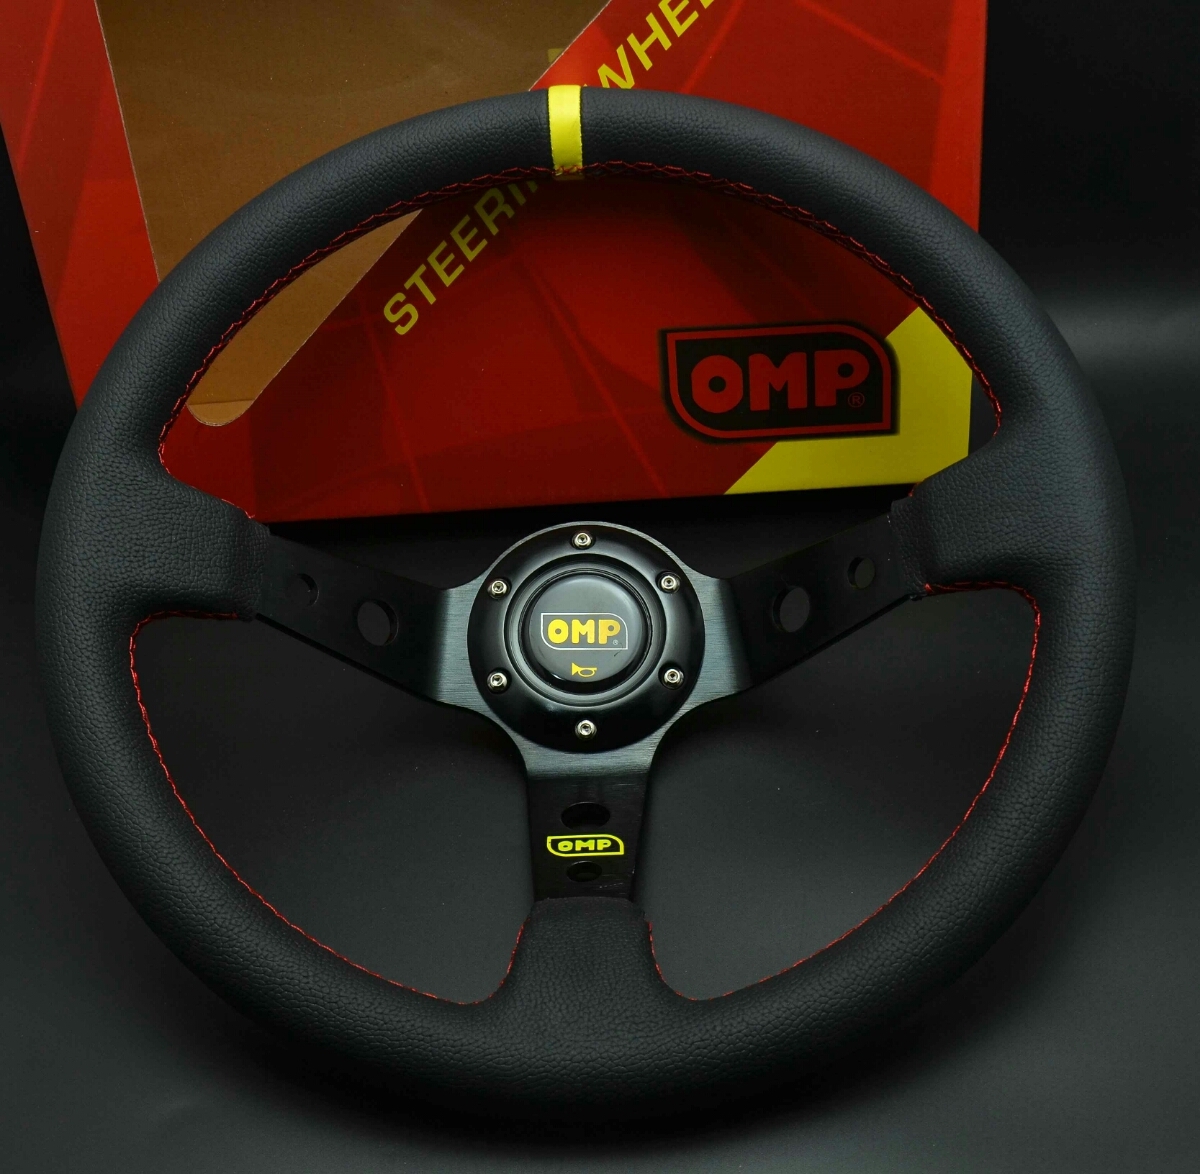 全新OMP轉向比賽轉向模型35φ真皮 原文:新品 OMP Steering 競技 ステアリング モデル35φ 本革